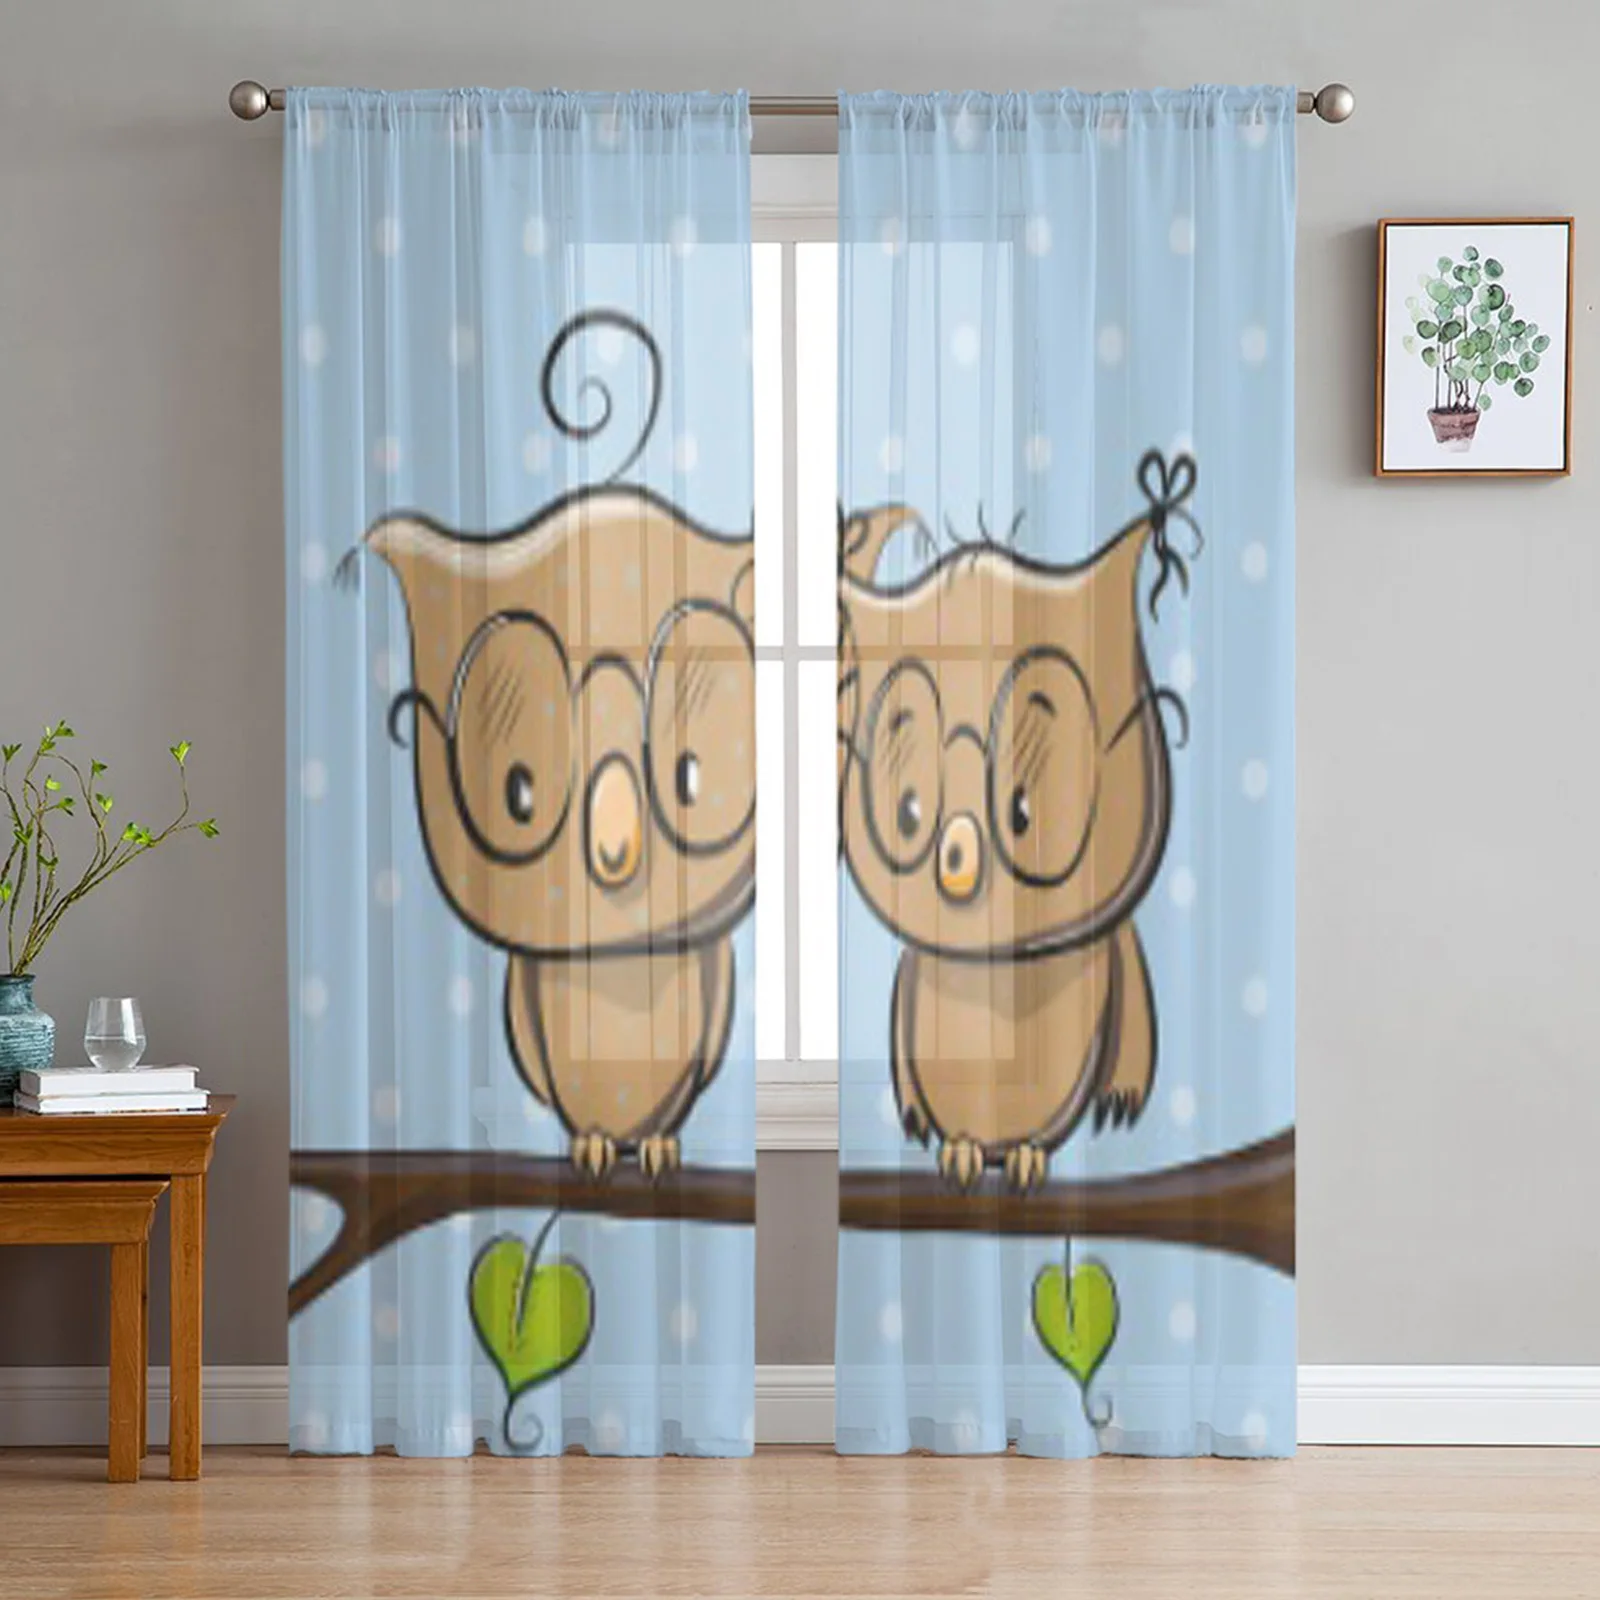 

Тюлевые занавески с двумя милыми мультяшными совами, прозрачные шторы из органзы для гостиной, спальни, декоративные оконные принадлежност...